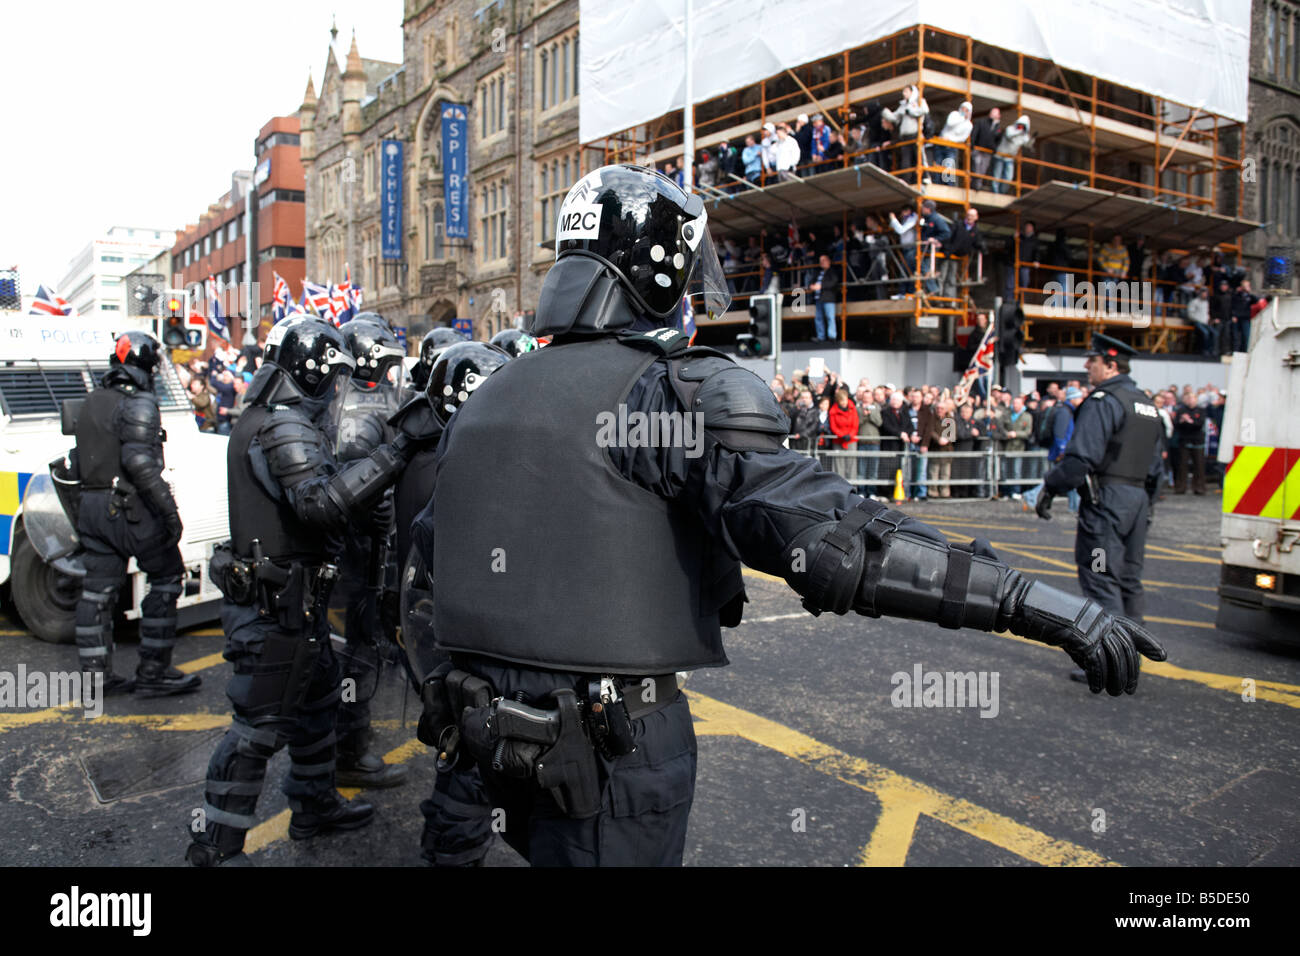 Ligne de service de police PSNI de l'Irlande du Nord, les agents de contrôle de l'escouade anti-émeute au cours de la ligne défensive sous forme de protestation loyaliste belfast Banque D'Images